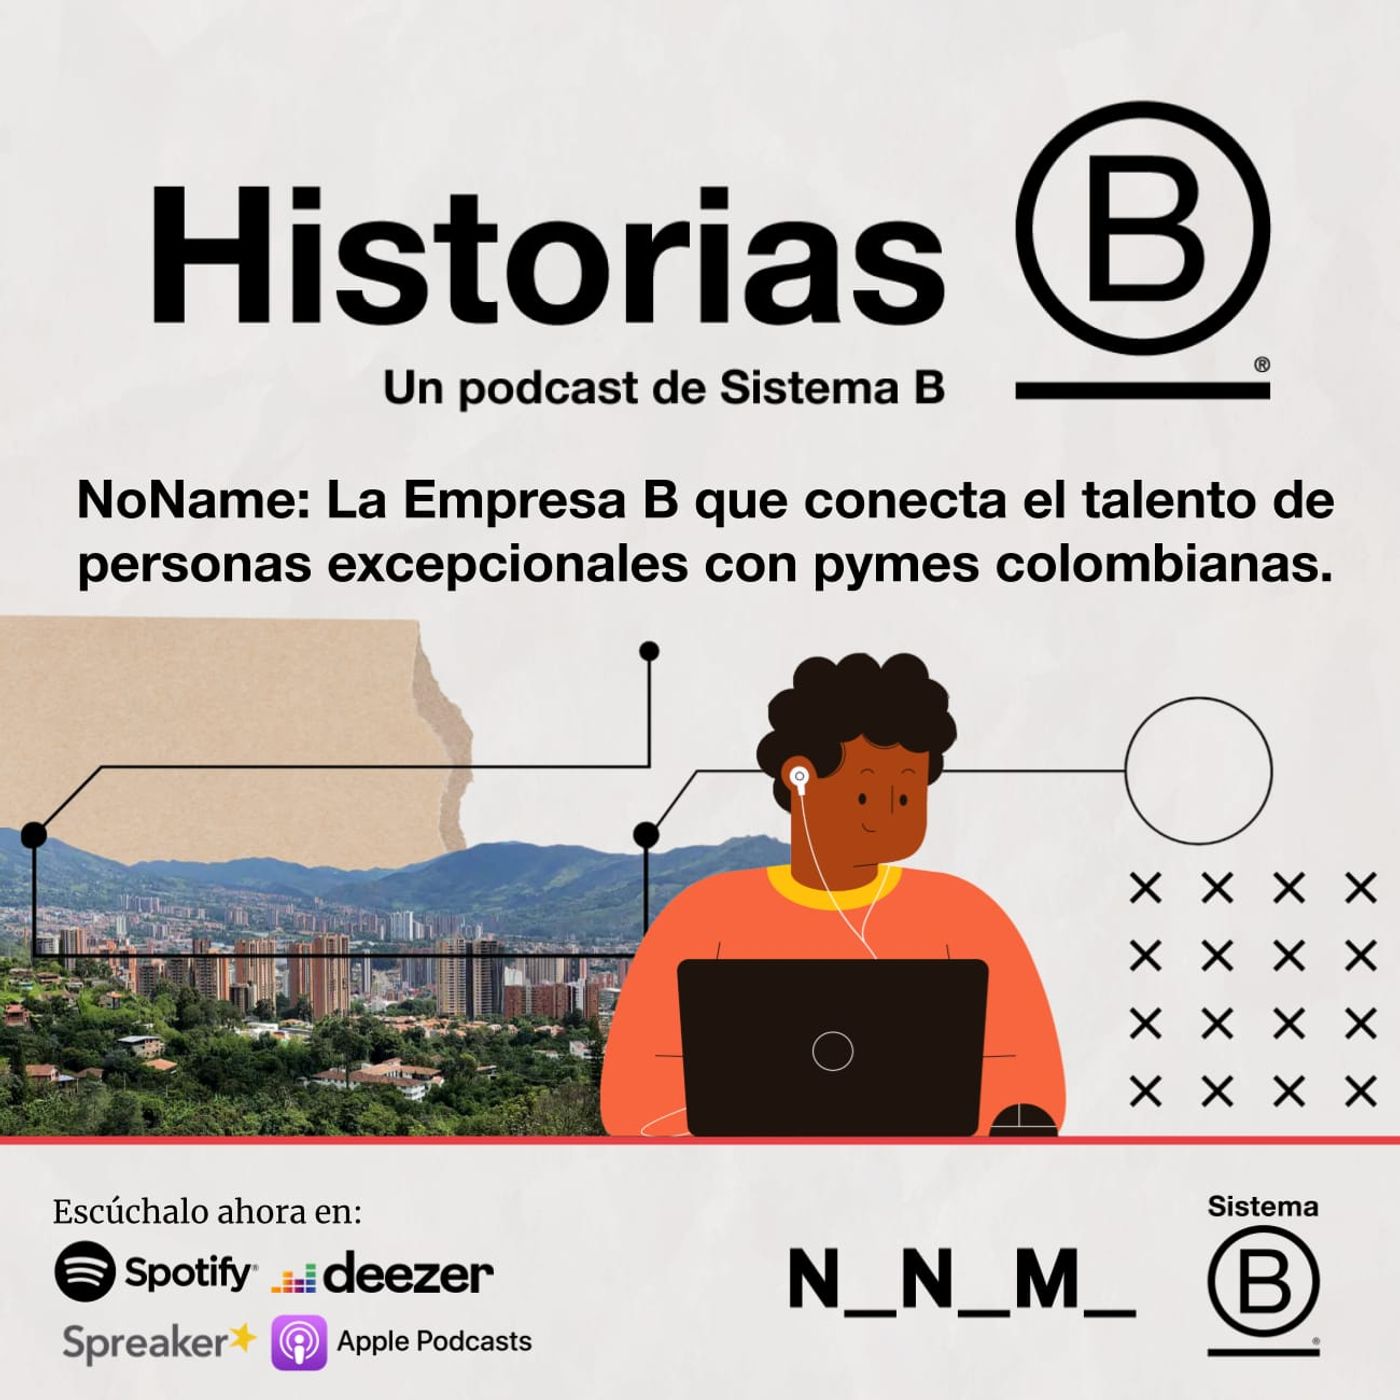 No Name: La Empresa B que conecta el talento de personas excepcionales con pymes colombianas.